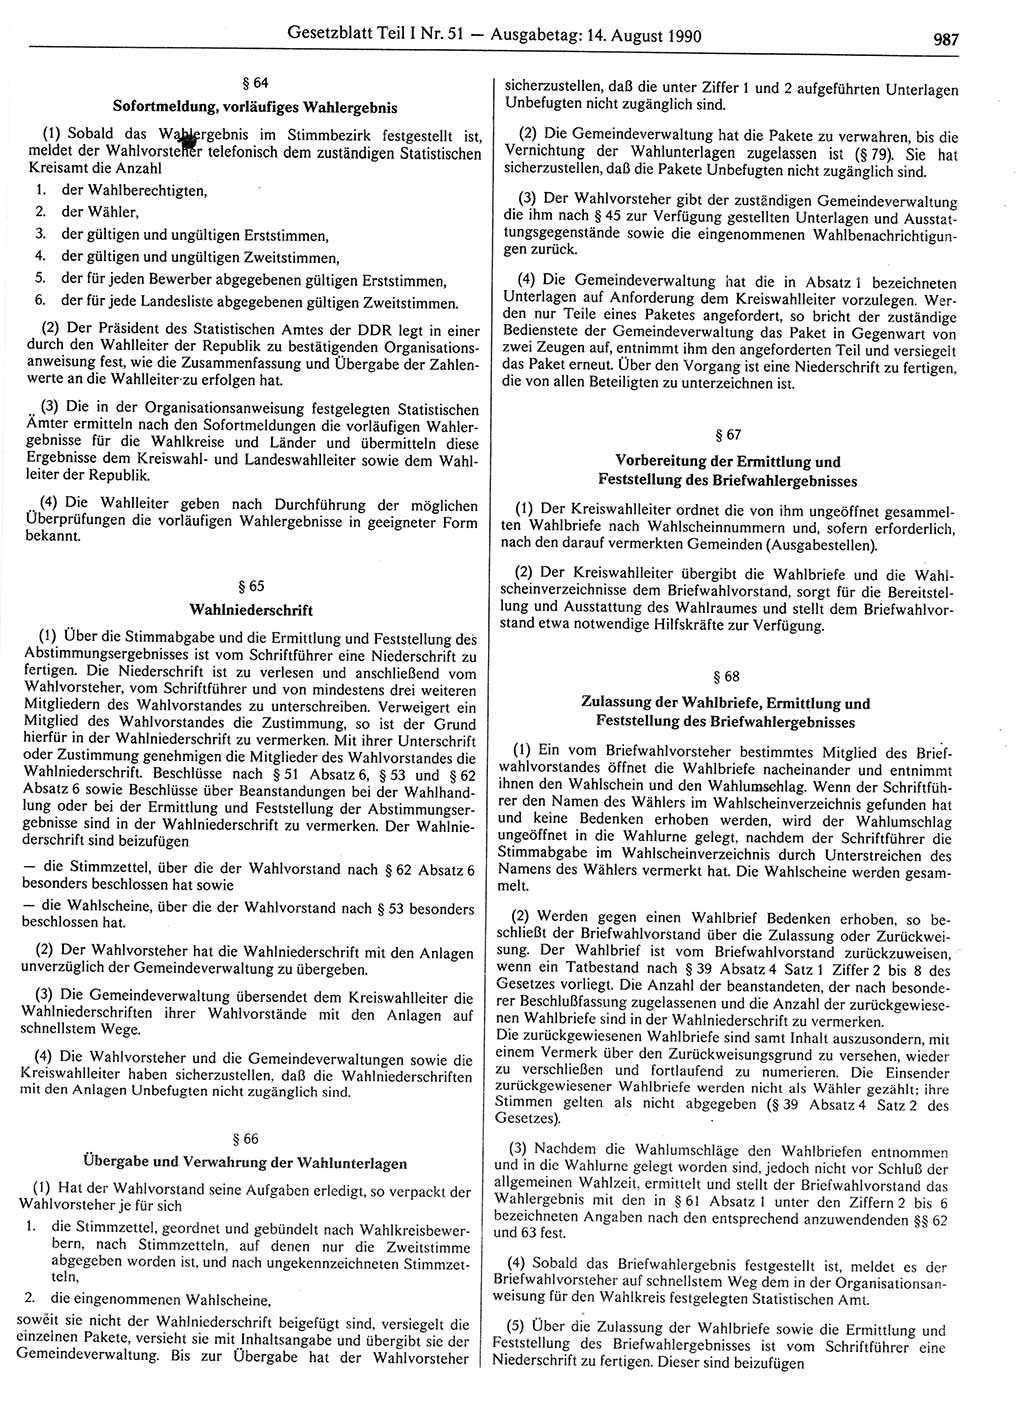 Gesetzblatt (GBl.) der Deutschen Demokratischen Republik (DDR) Teil Ⅰ 1990, Seite 987 (GBl. DDR Ⅰ 1990, S. 987)